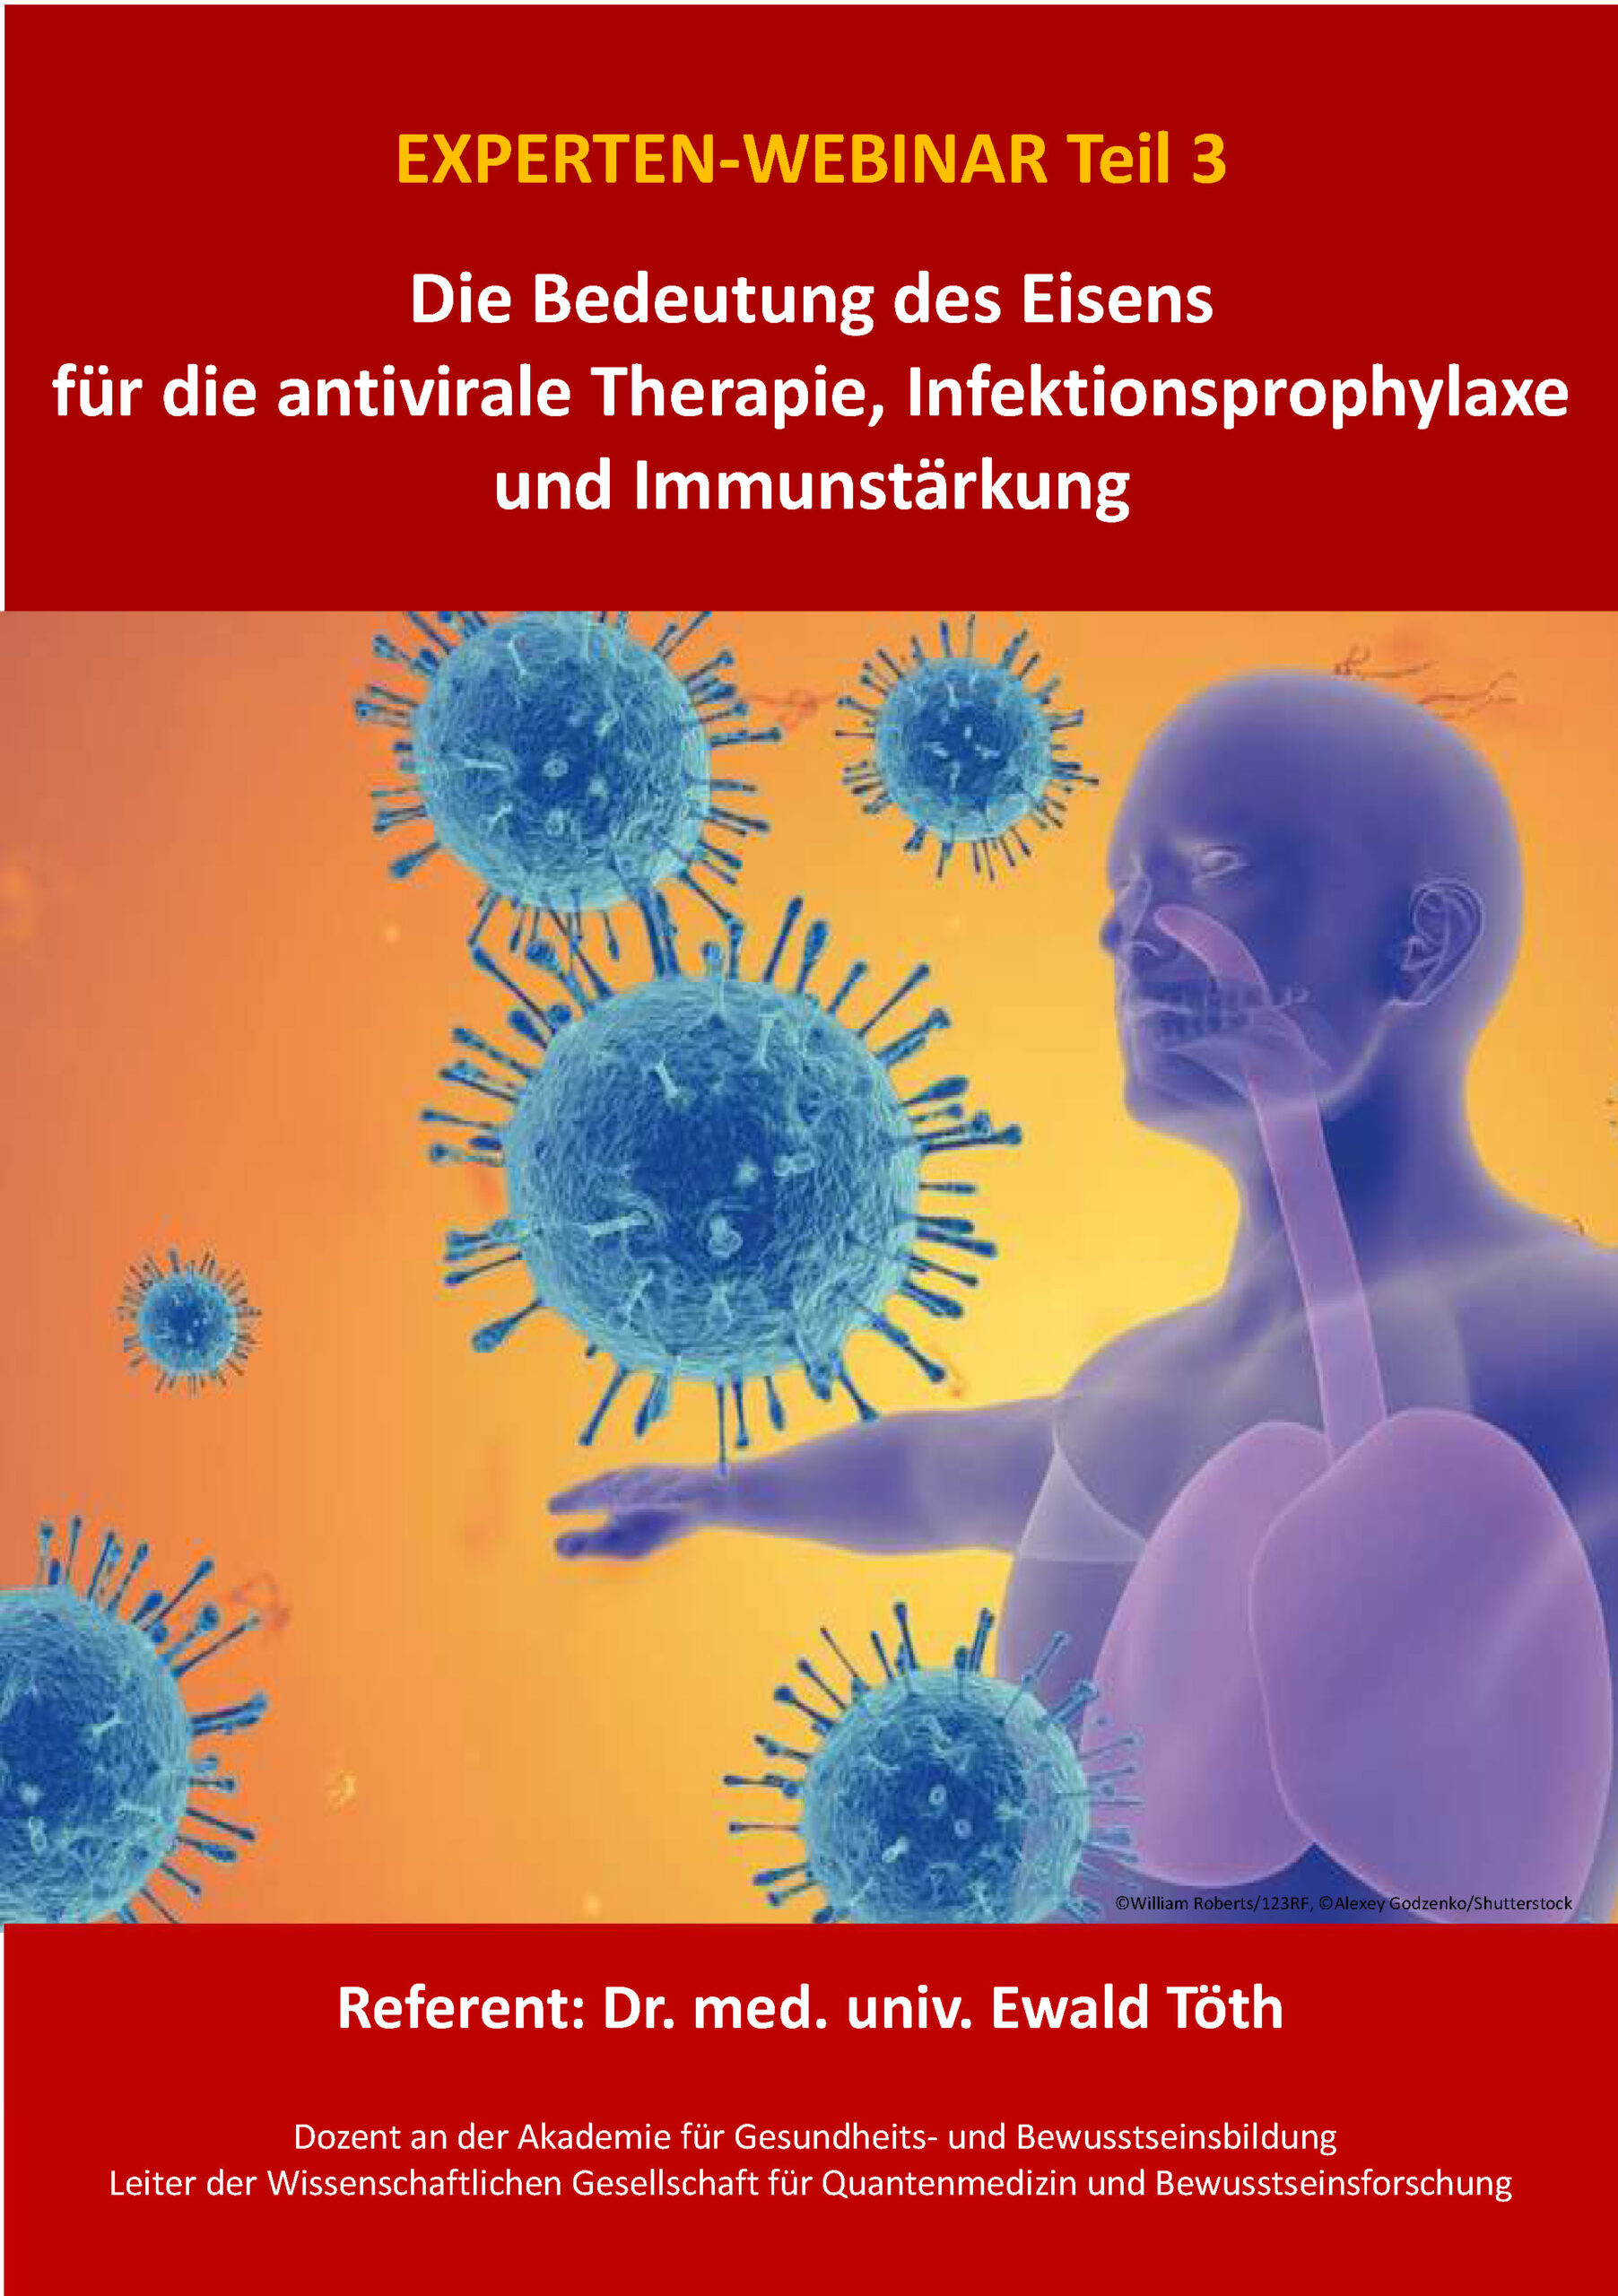 Toeth-Bedeutung von Eisen bei antiviraler Therapie_05-2021-Handout_Seite_01